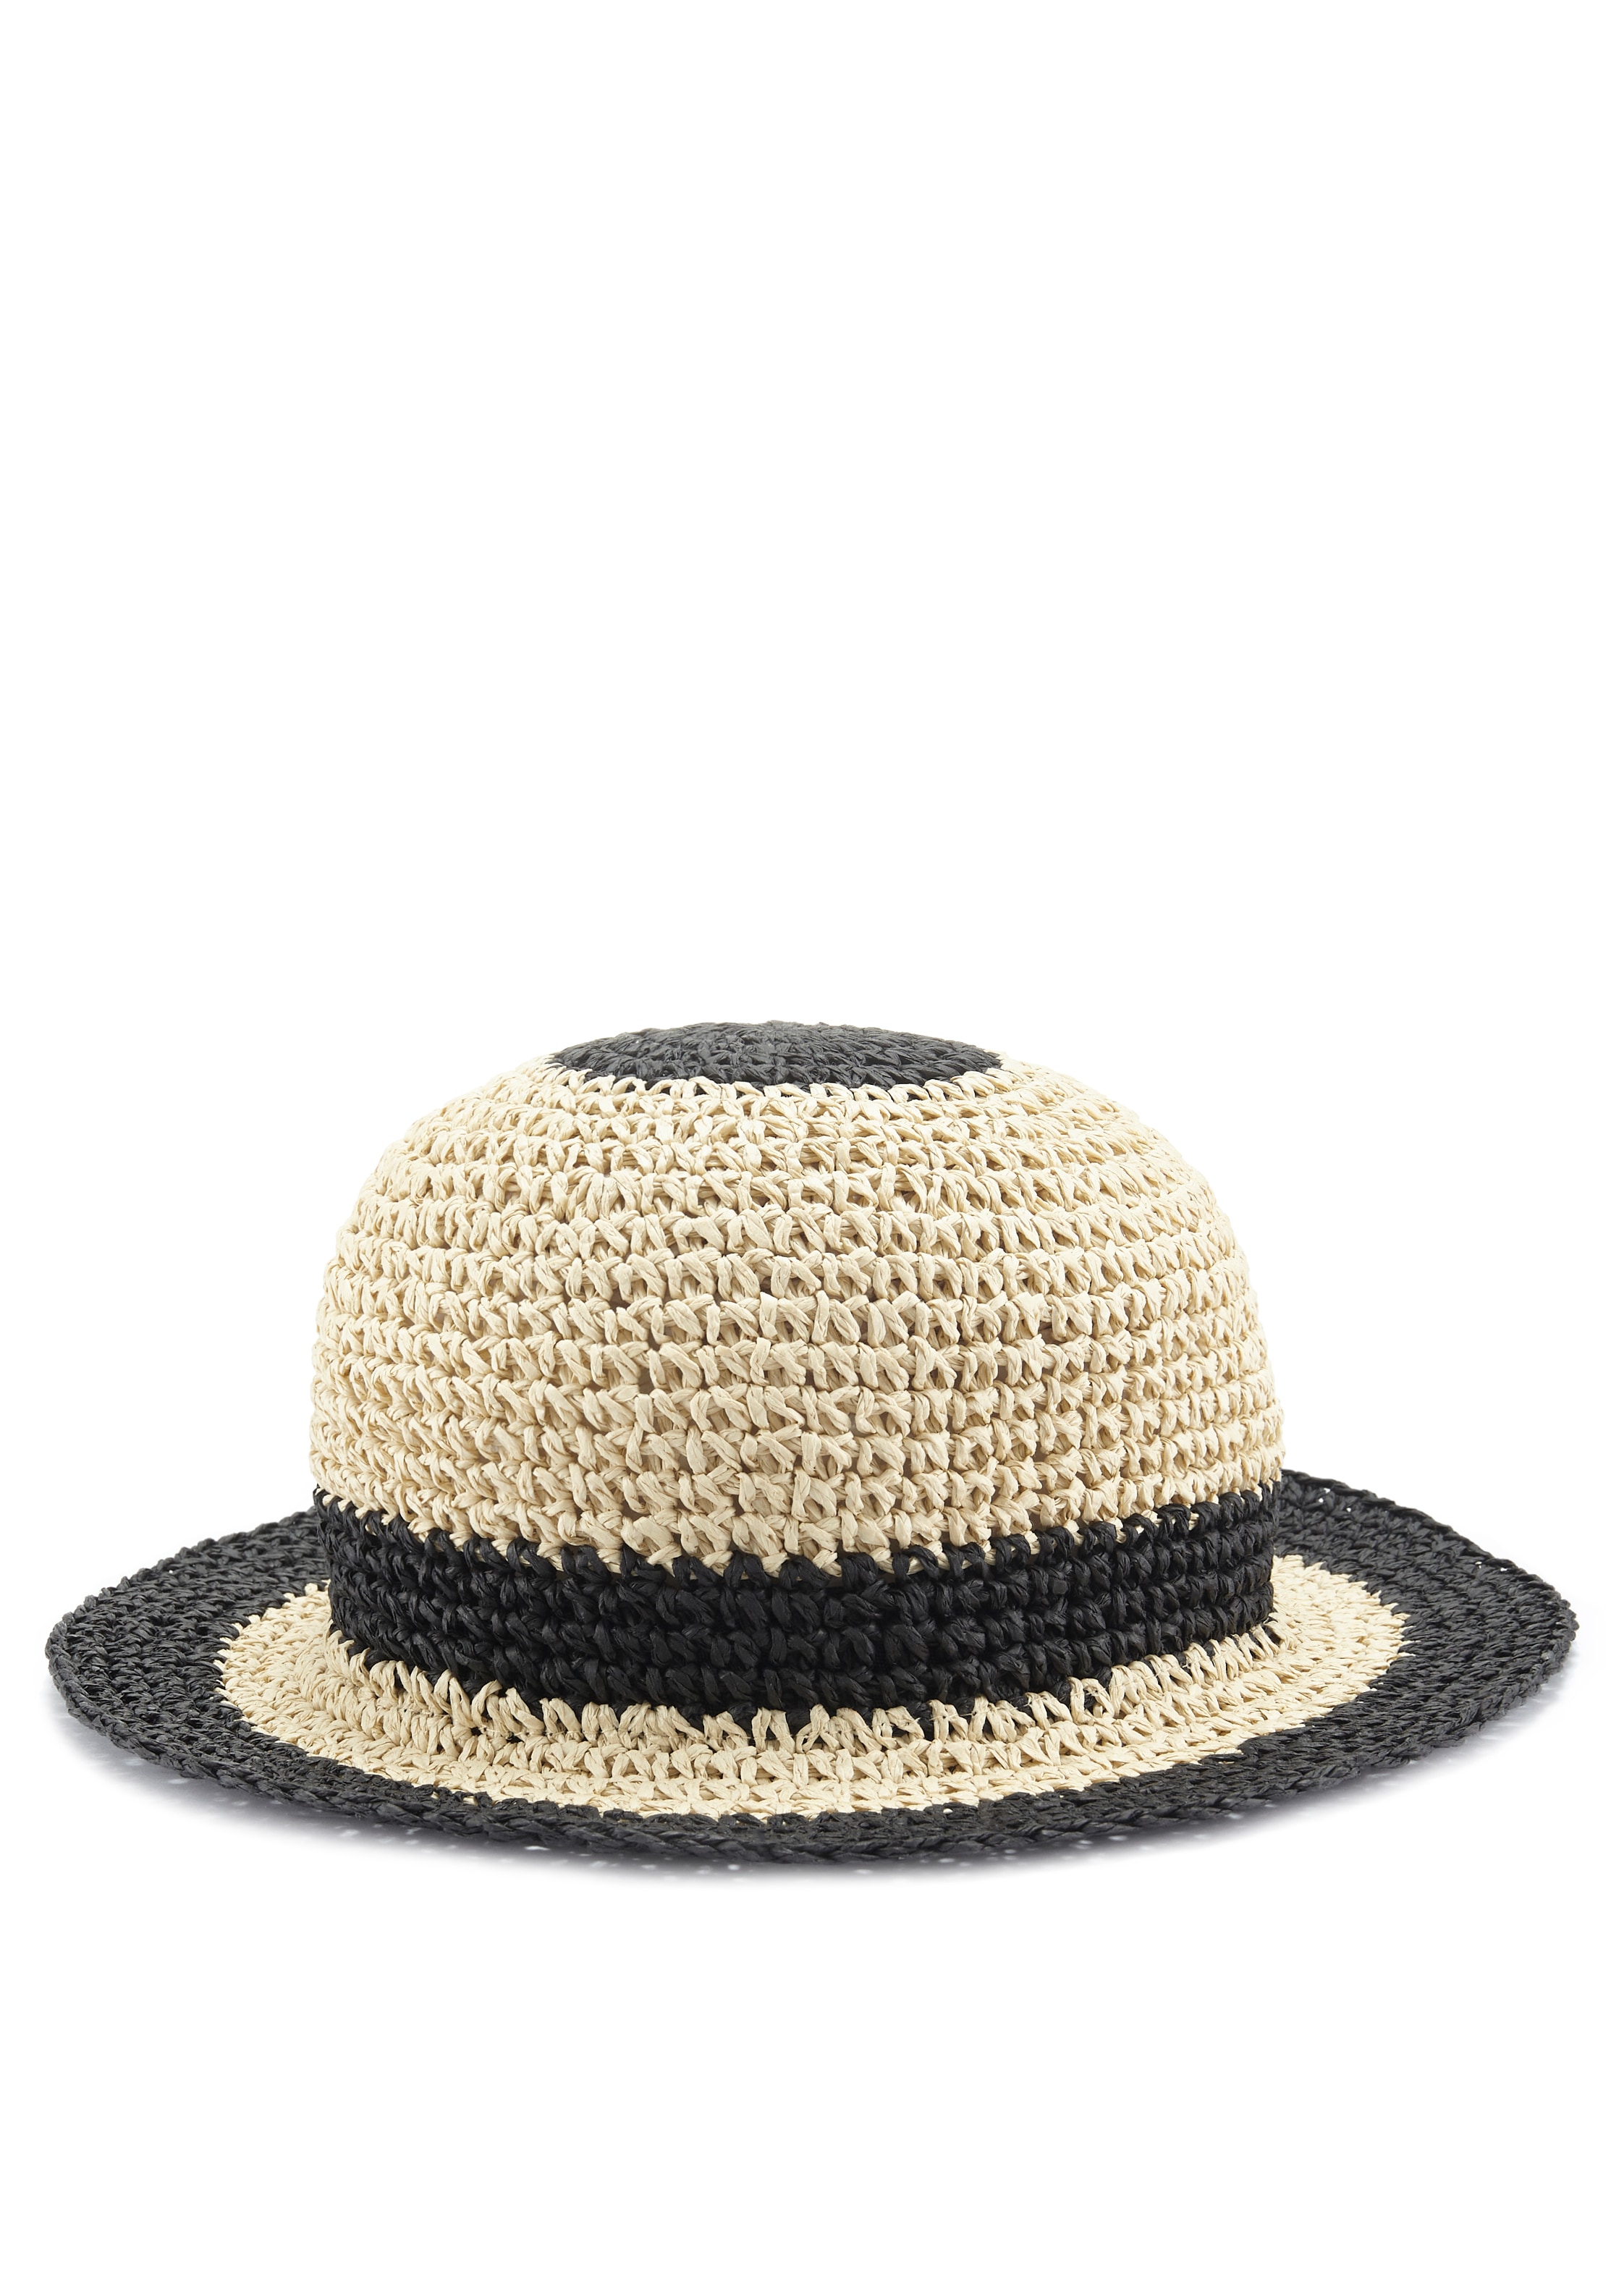 LASCANA Strohhut, Bucket Hat aus kaufen Sommerhut, VEGAN | Kopfbedeckung UNIVERSAL Stroh, online